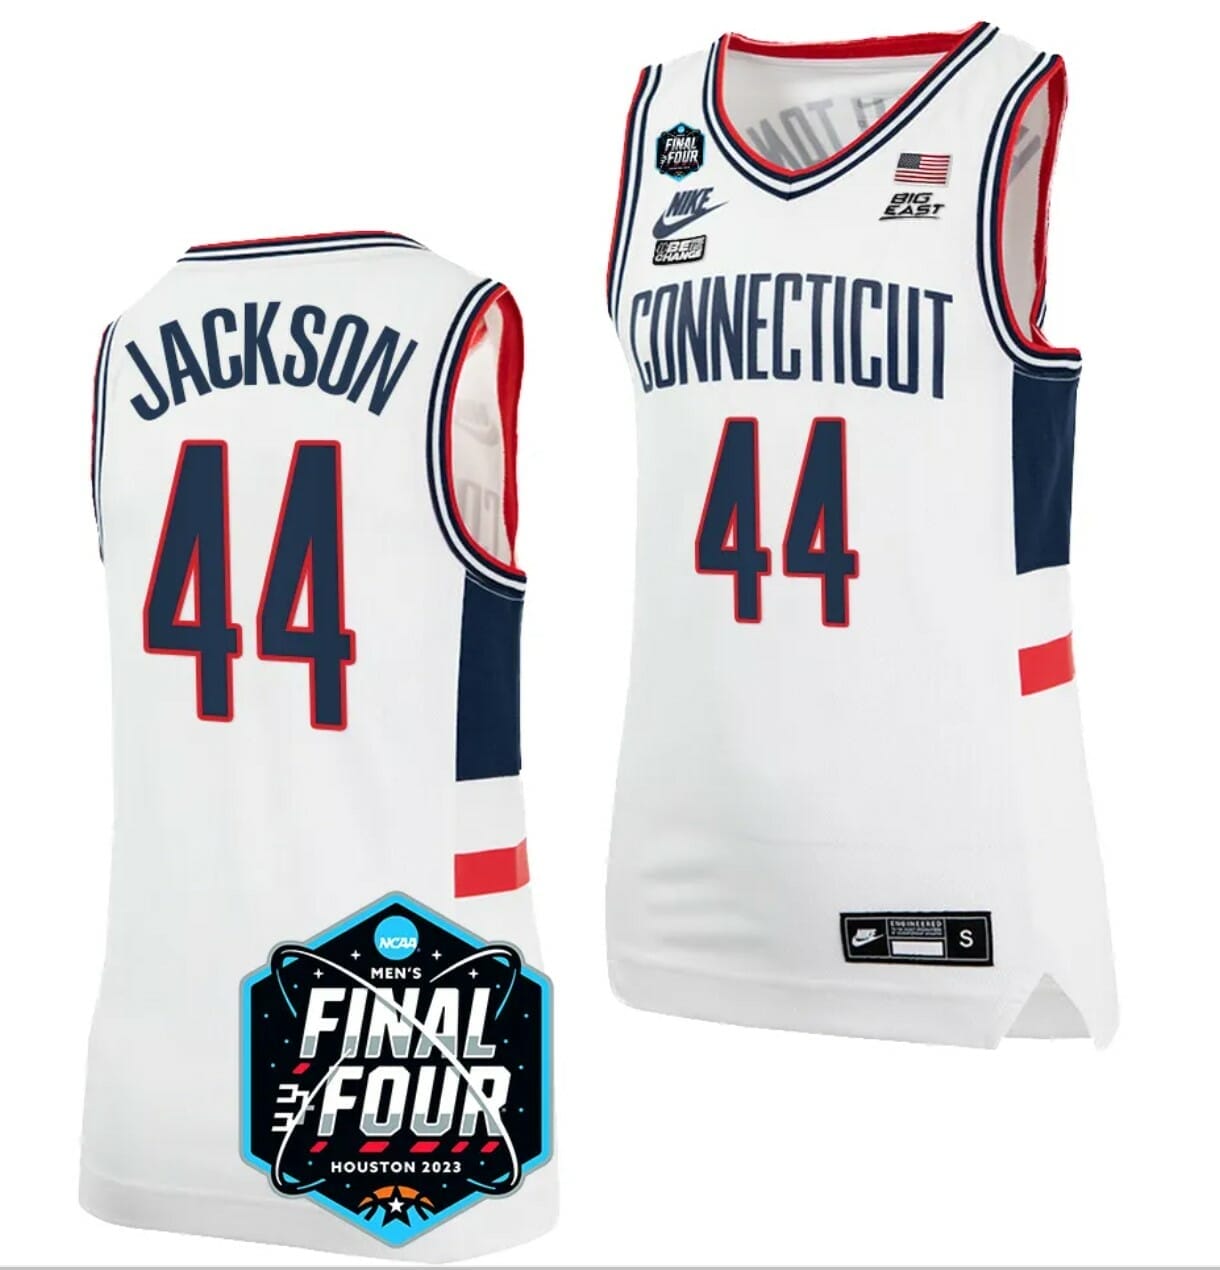 [Trending] Buy New Andre Jackson Basketball Jersey Uconn